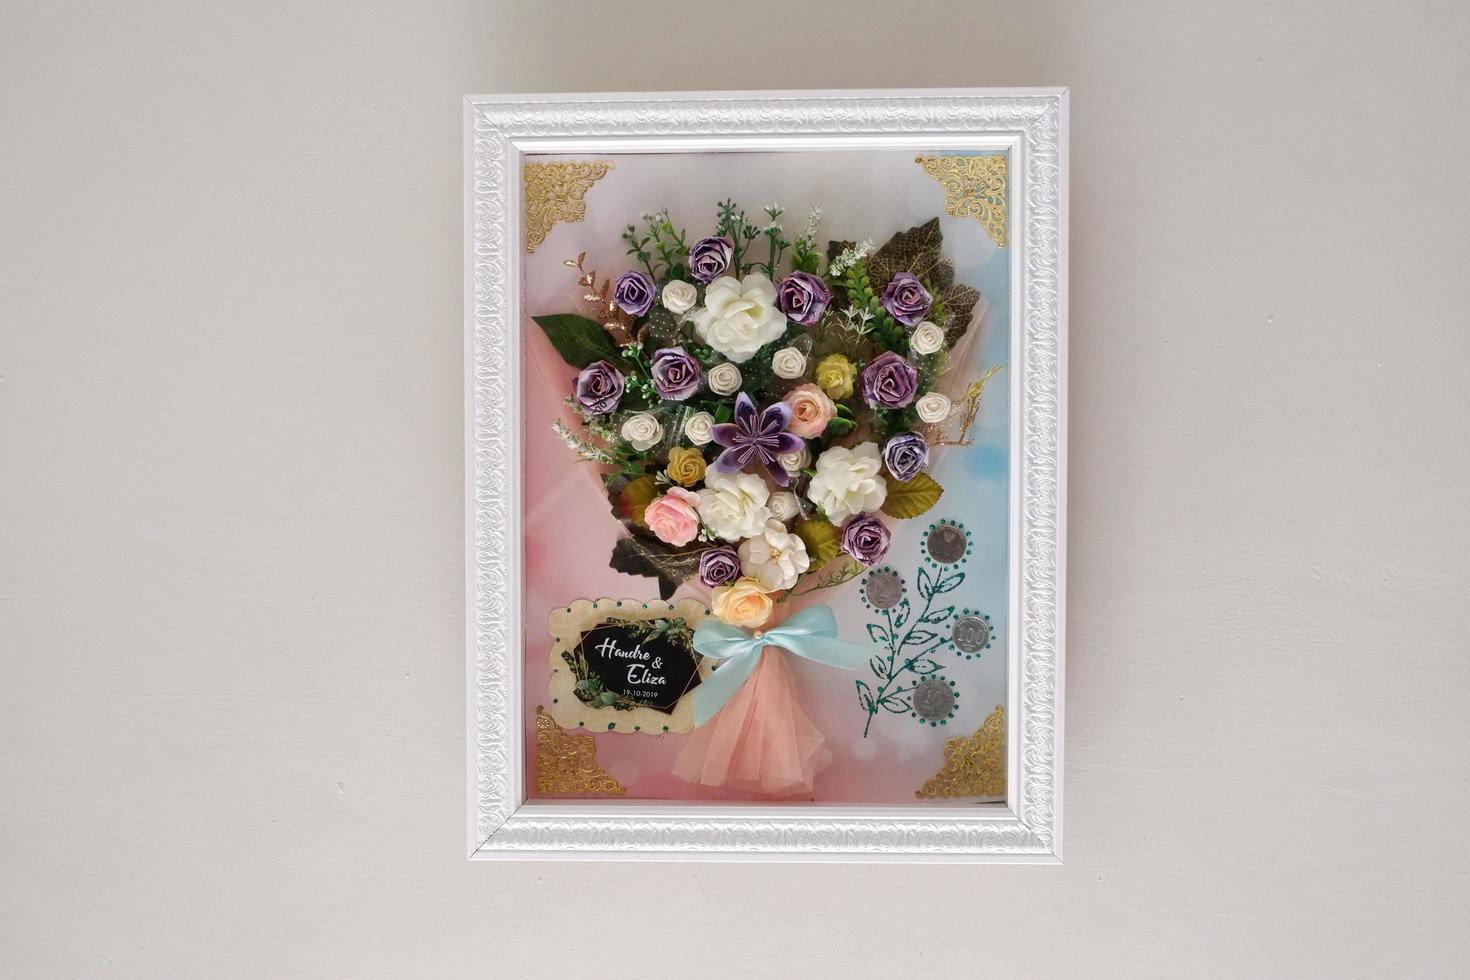 arreglos florales de papel como fondo foto